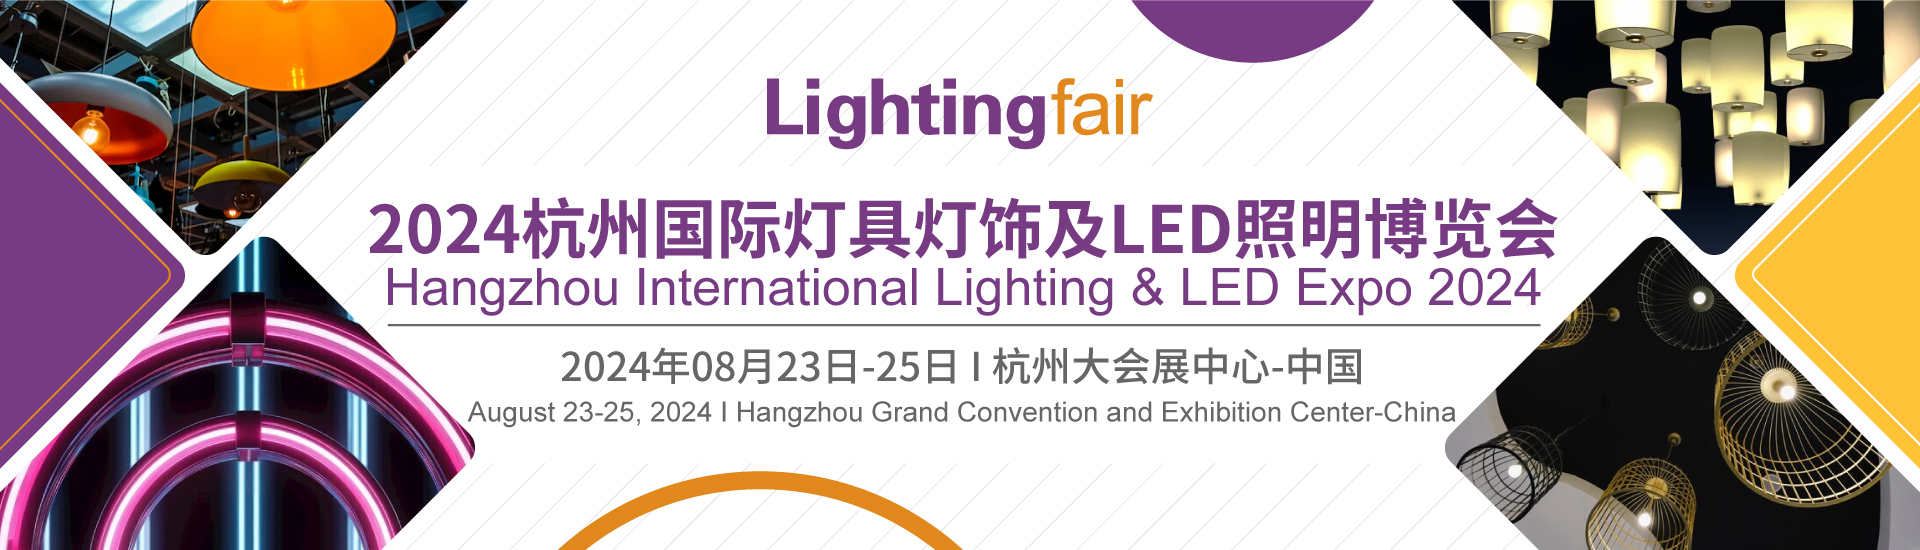 2024杭州国际灯具灯饰及LED照明博览会